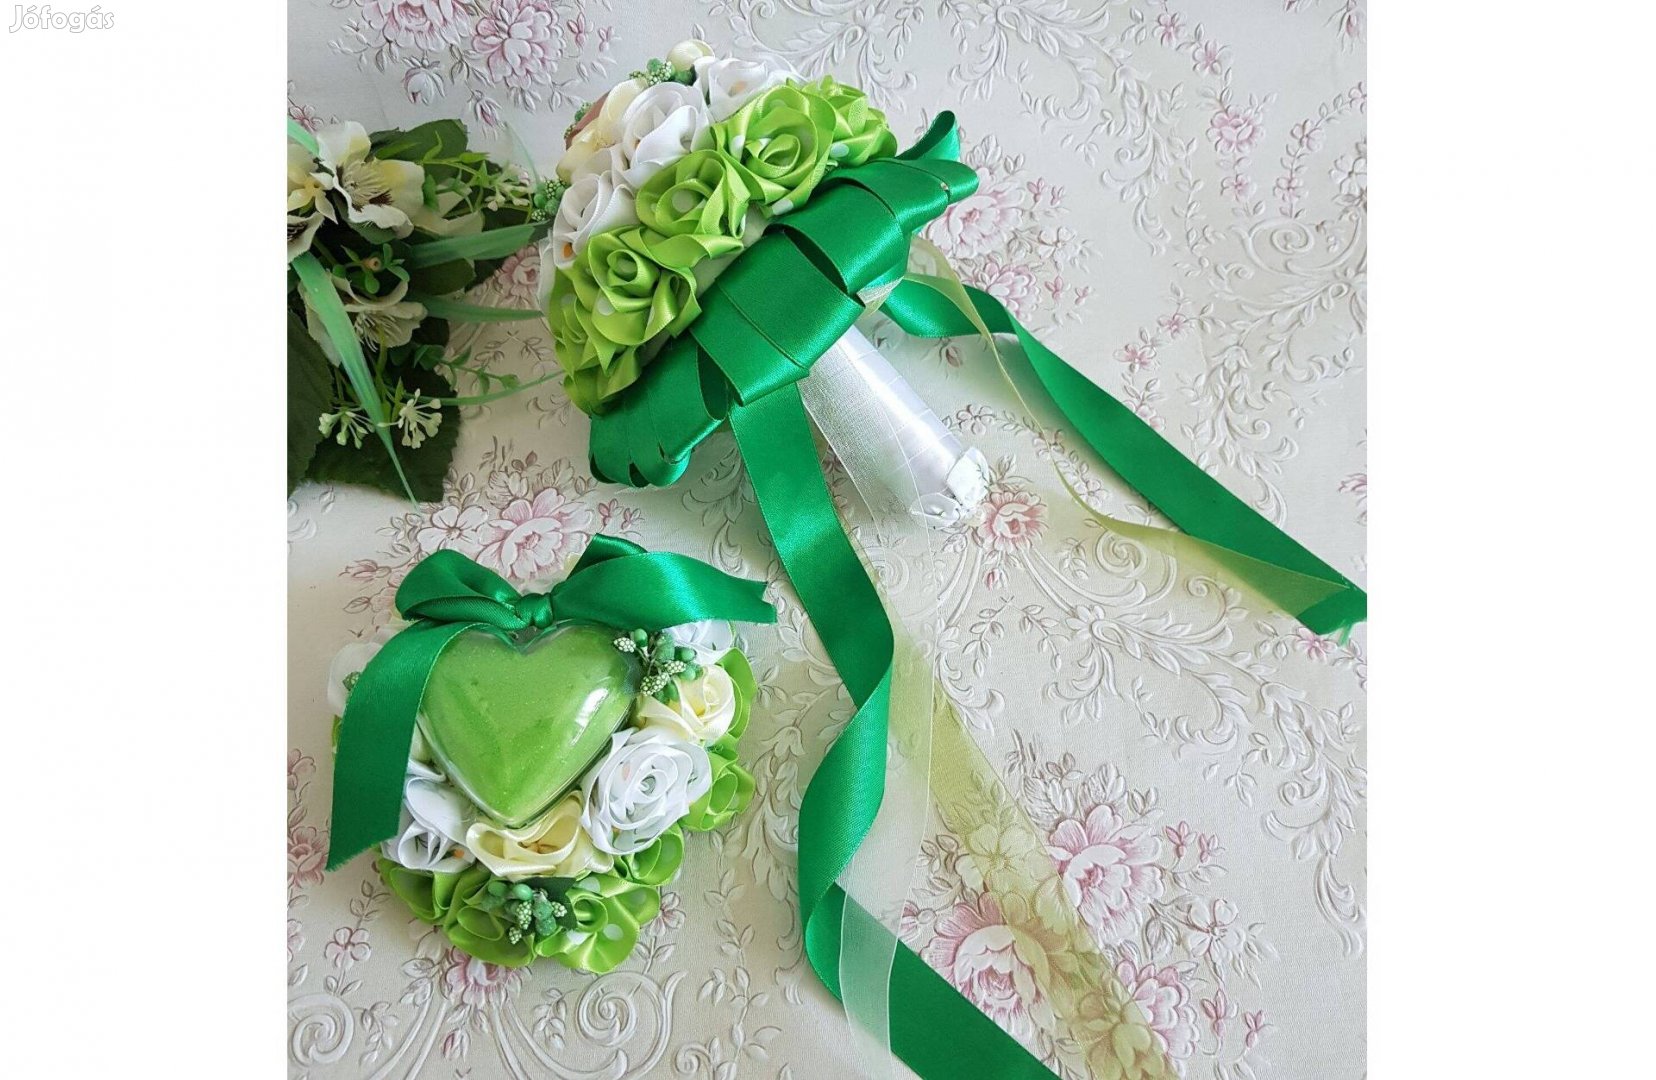 Egyedi készítésű zöld-krém-fehér menyasszonyi örökcsokor és gyűrűtartó